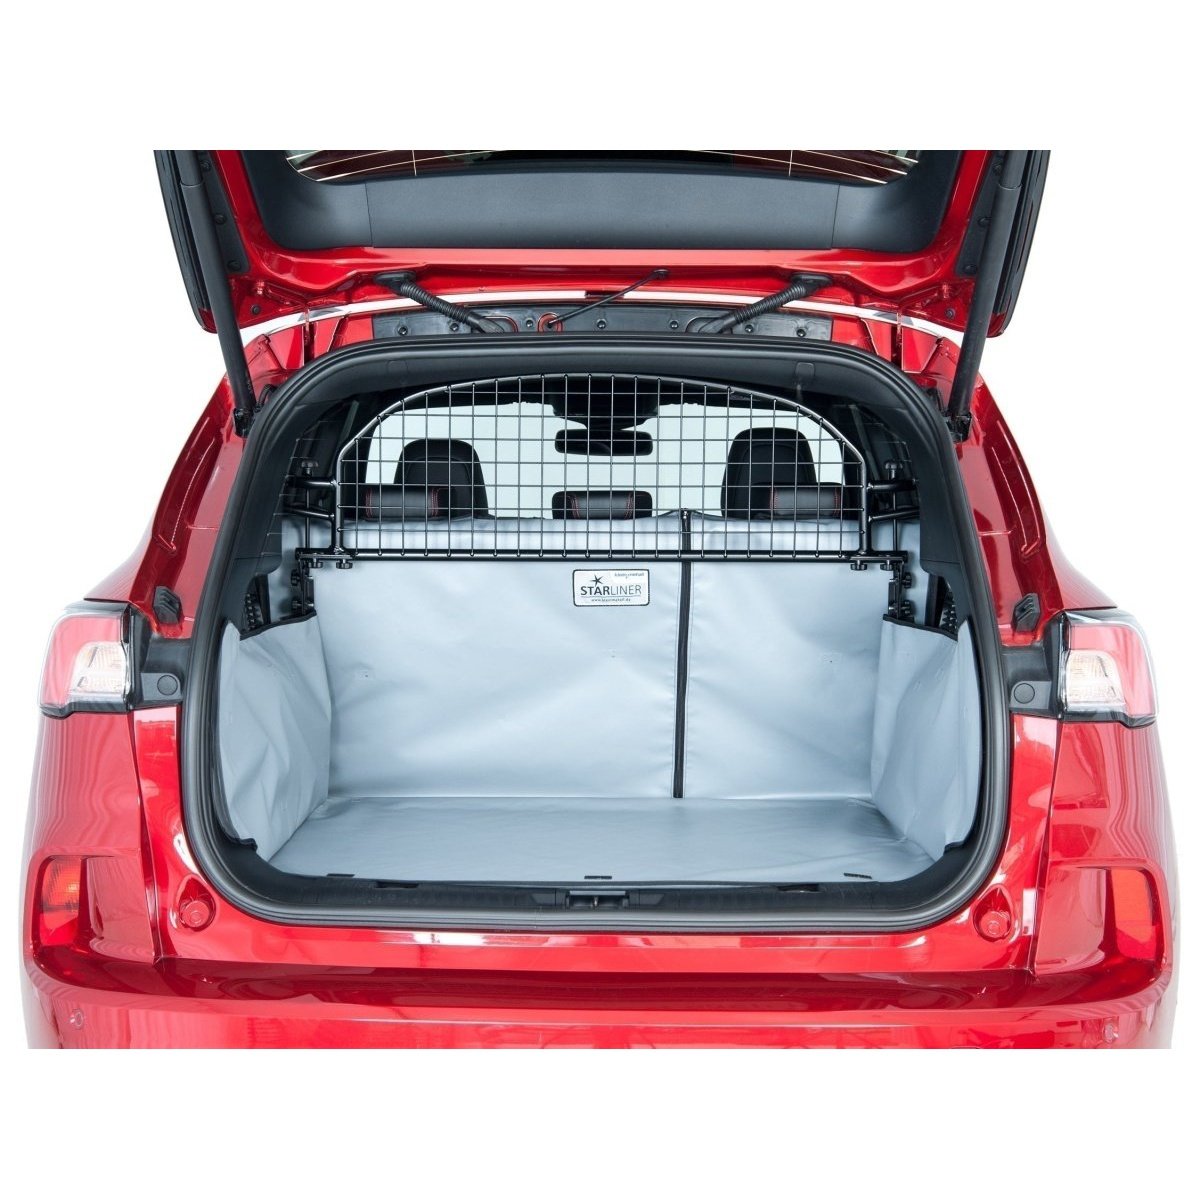 Kleinmetall Kofferraumwanne für VW Tiguan II nicht var. Ladeb., tief, grau tierxxl-de